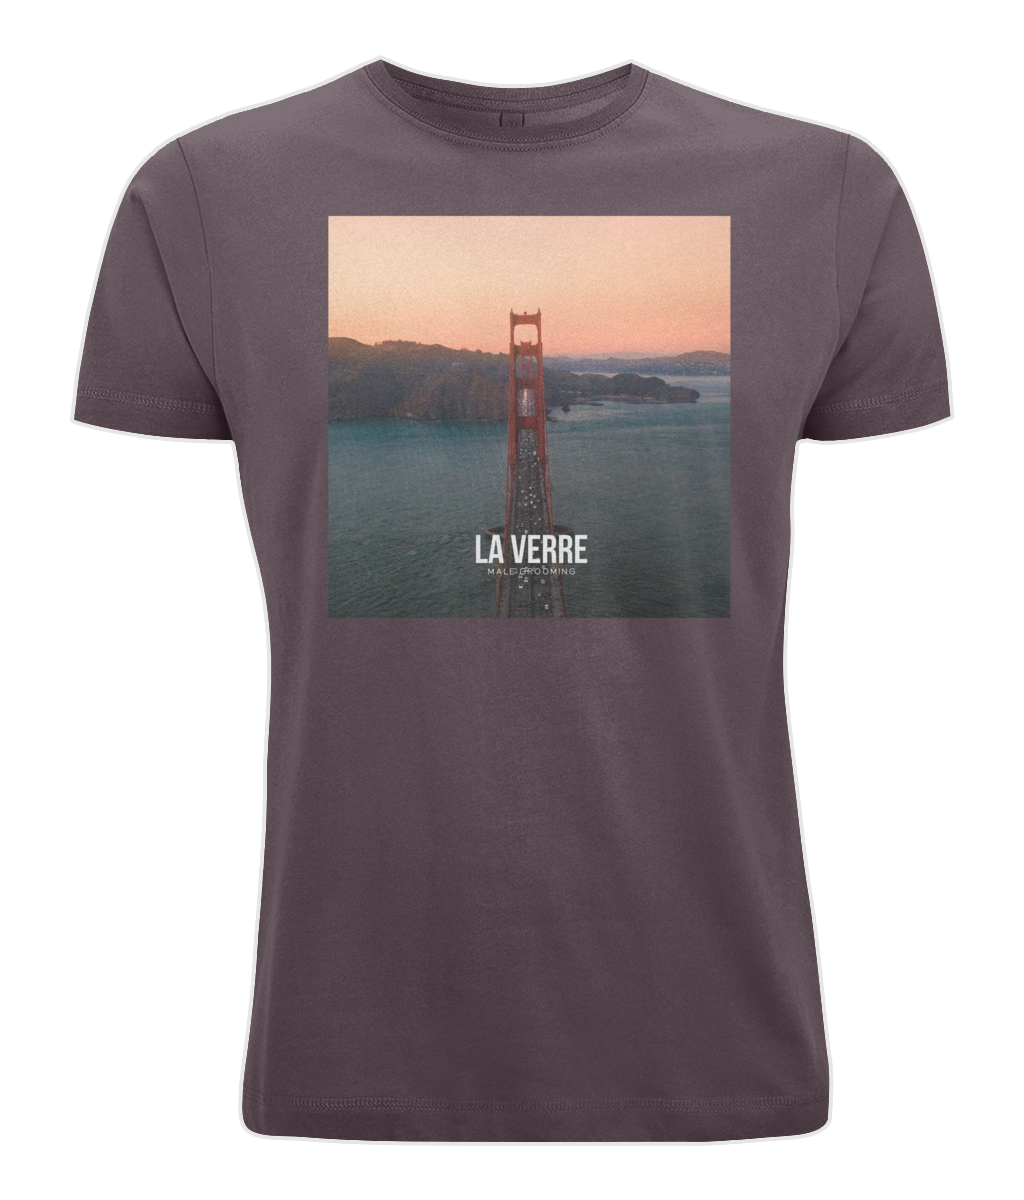 Men's Bamboo Jersey T-Shirt - Golden Gate